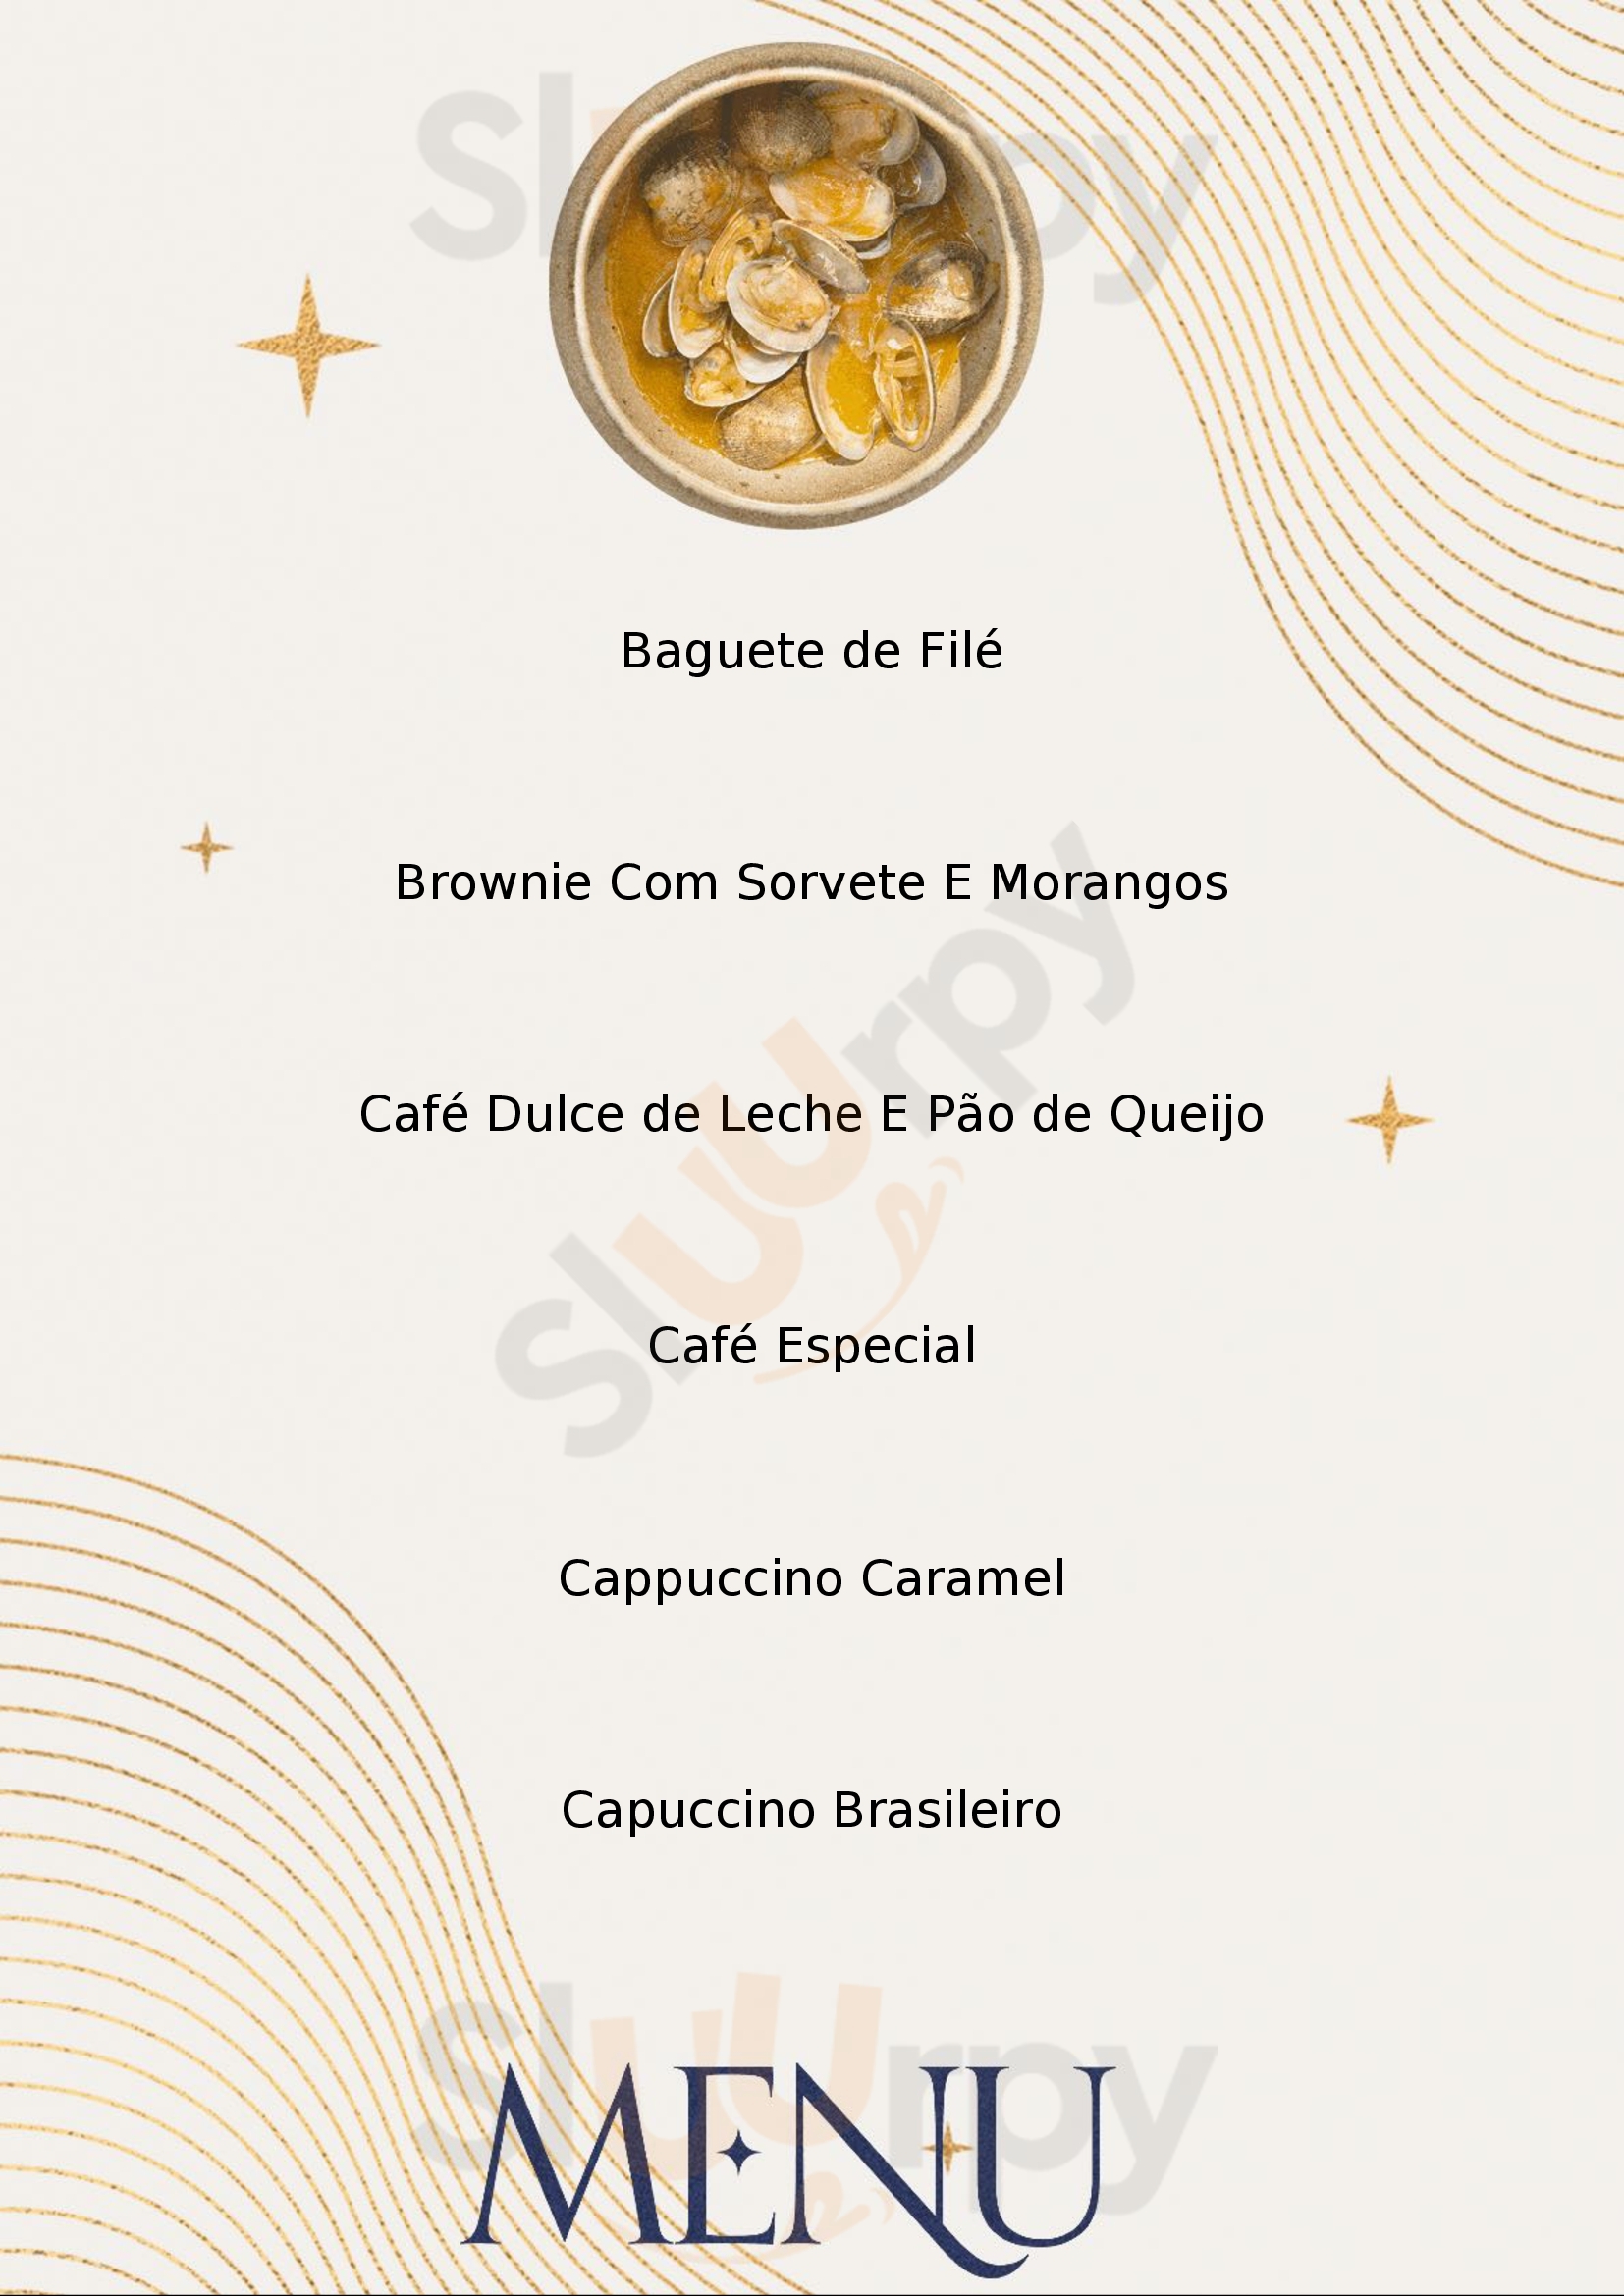 Quiero Café Garibaldi Menu - 1